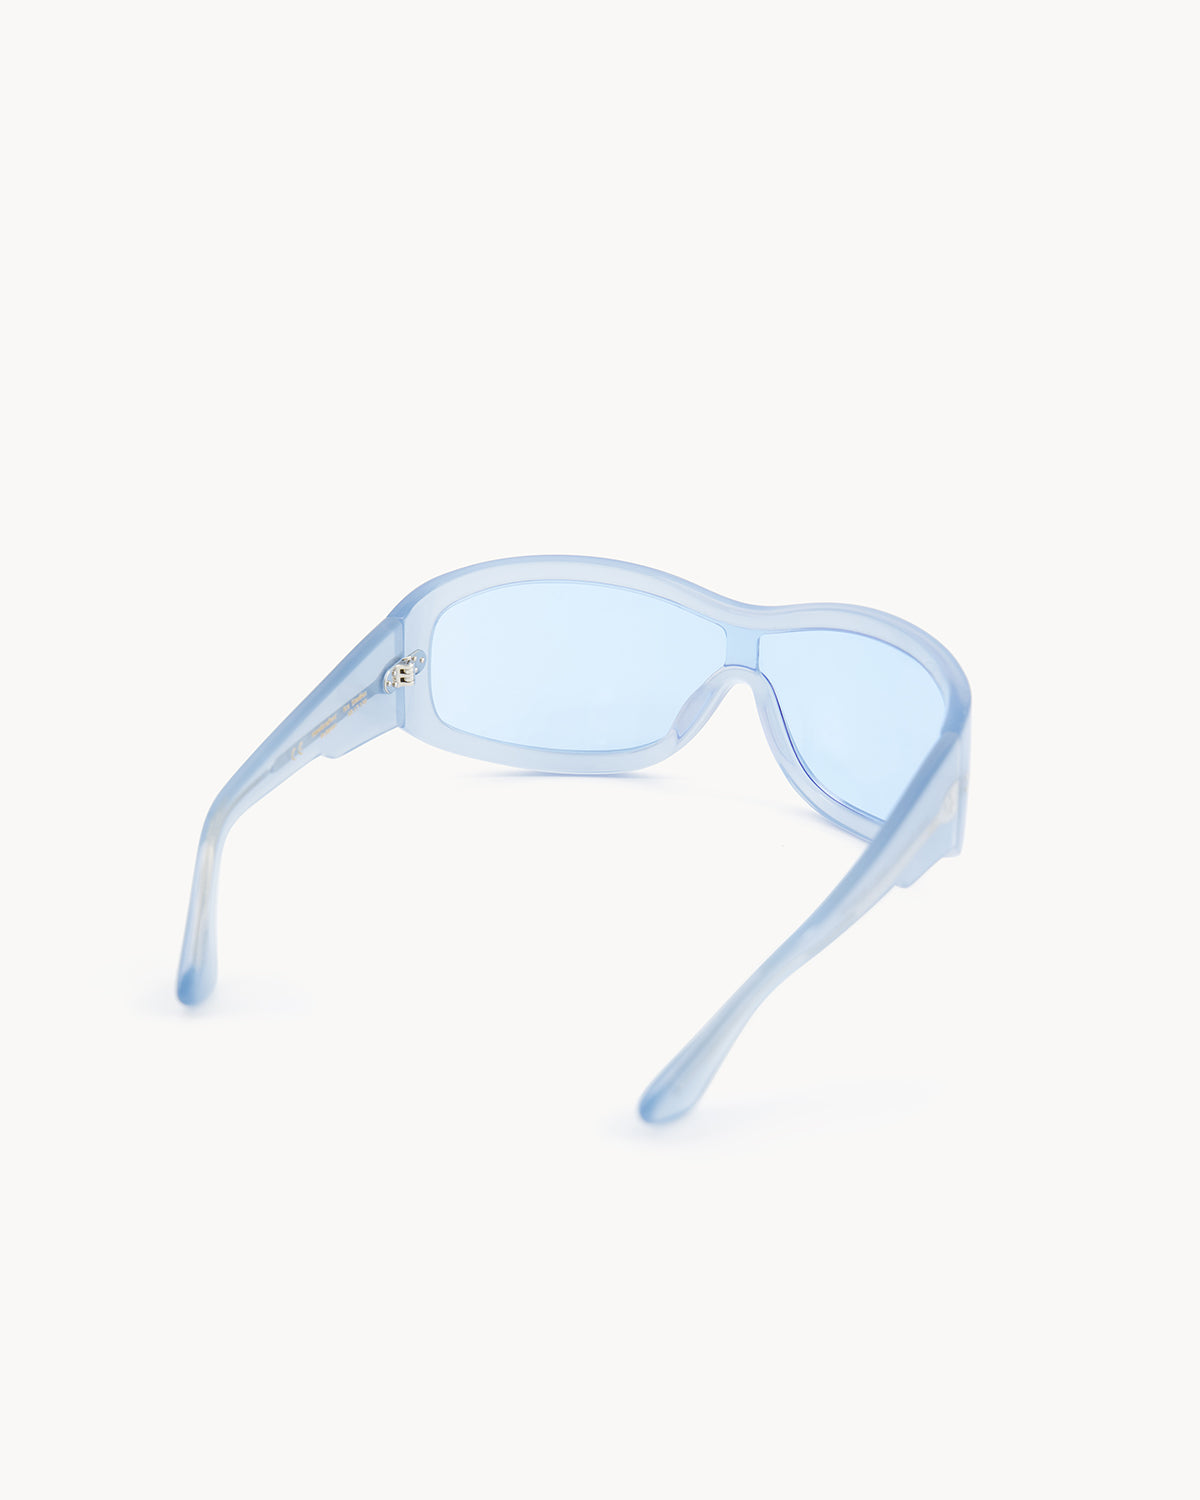 Port Tanger Nunny Sunglasses in Rif Blue Acetate and Rif Blue Lenses 3